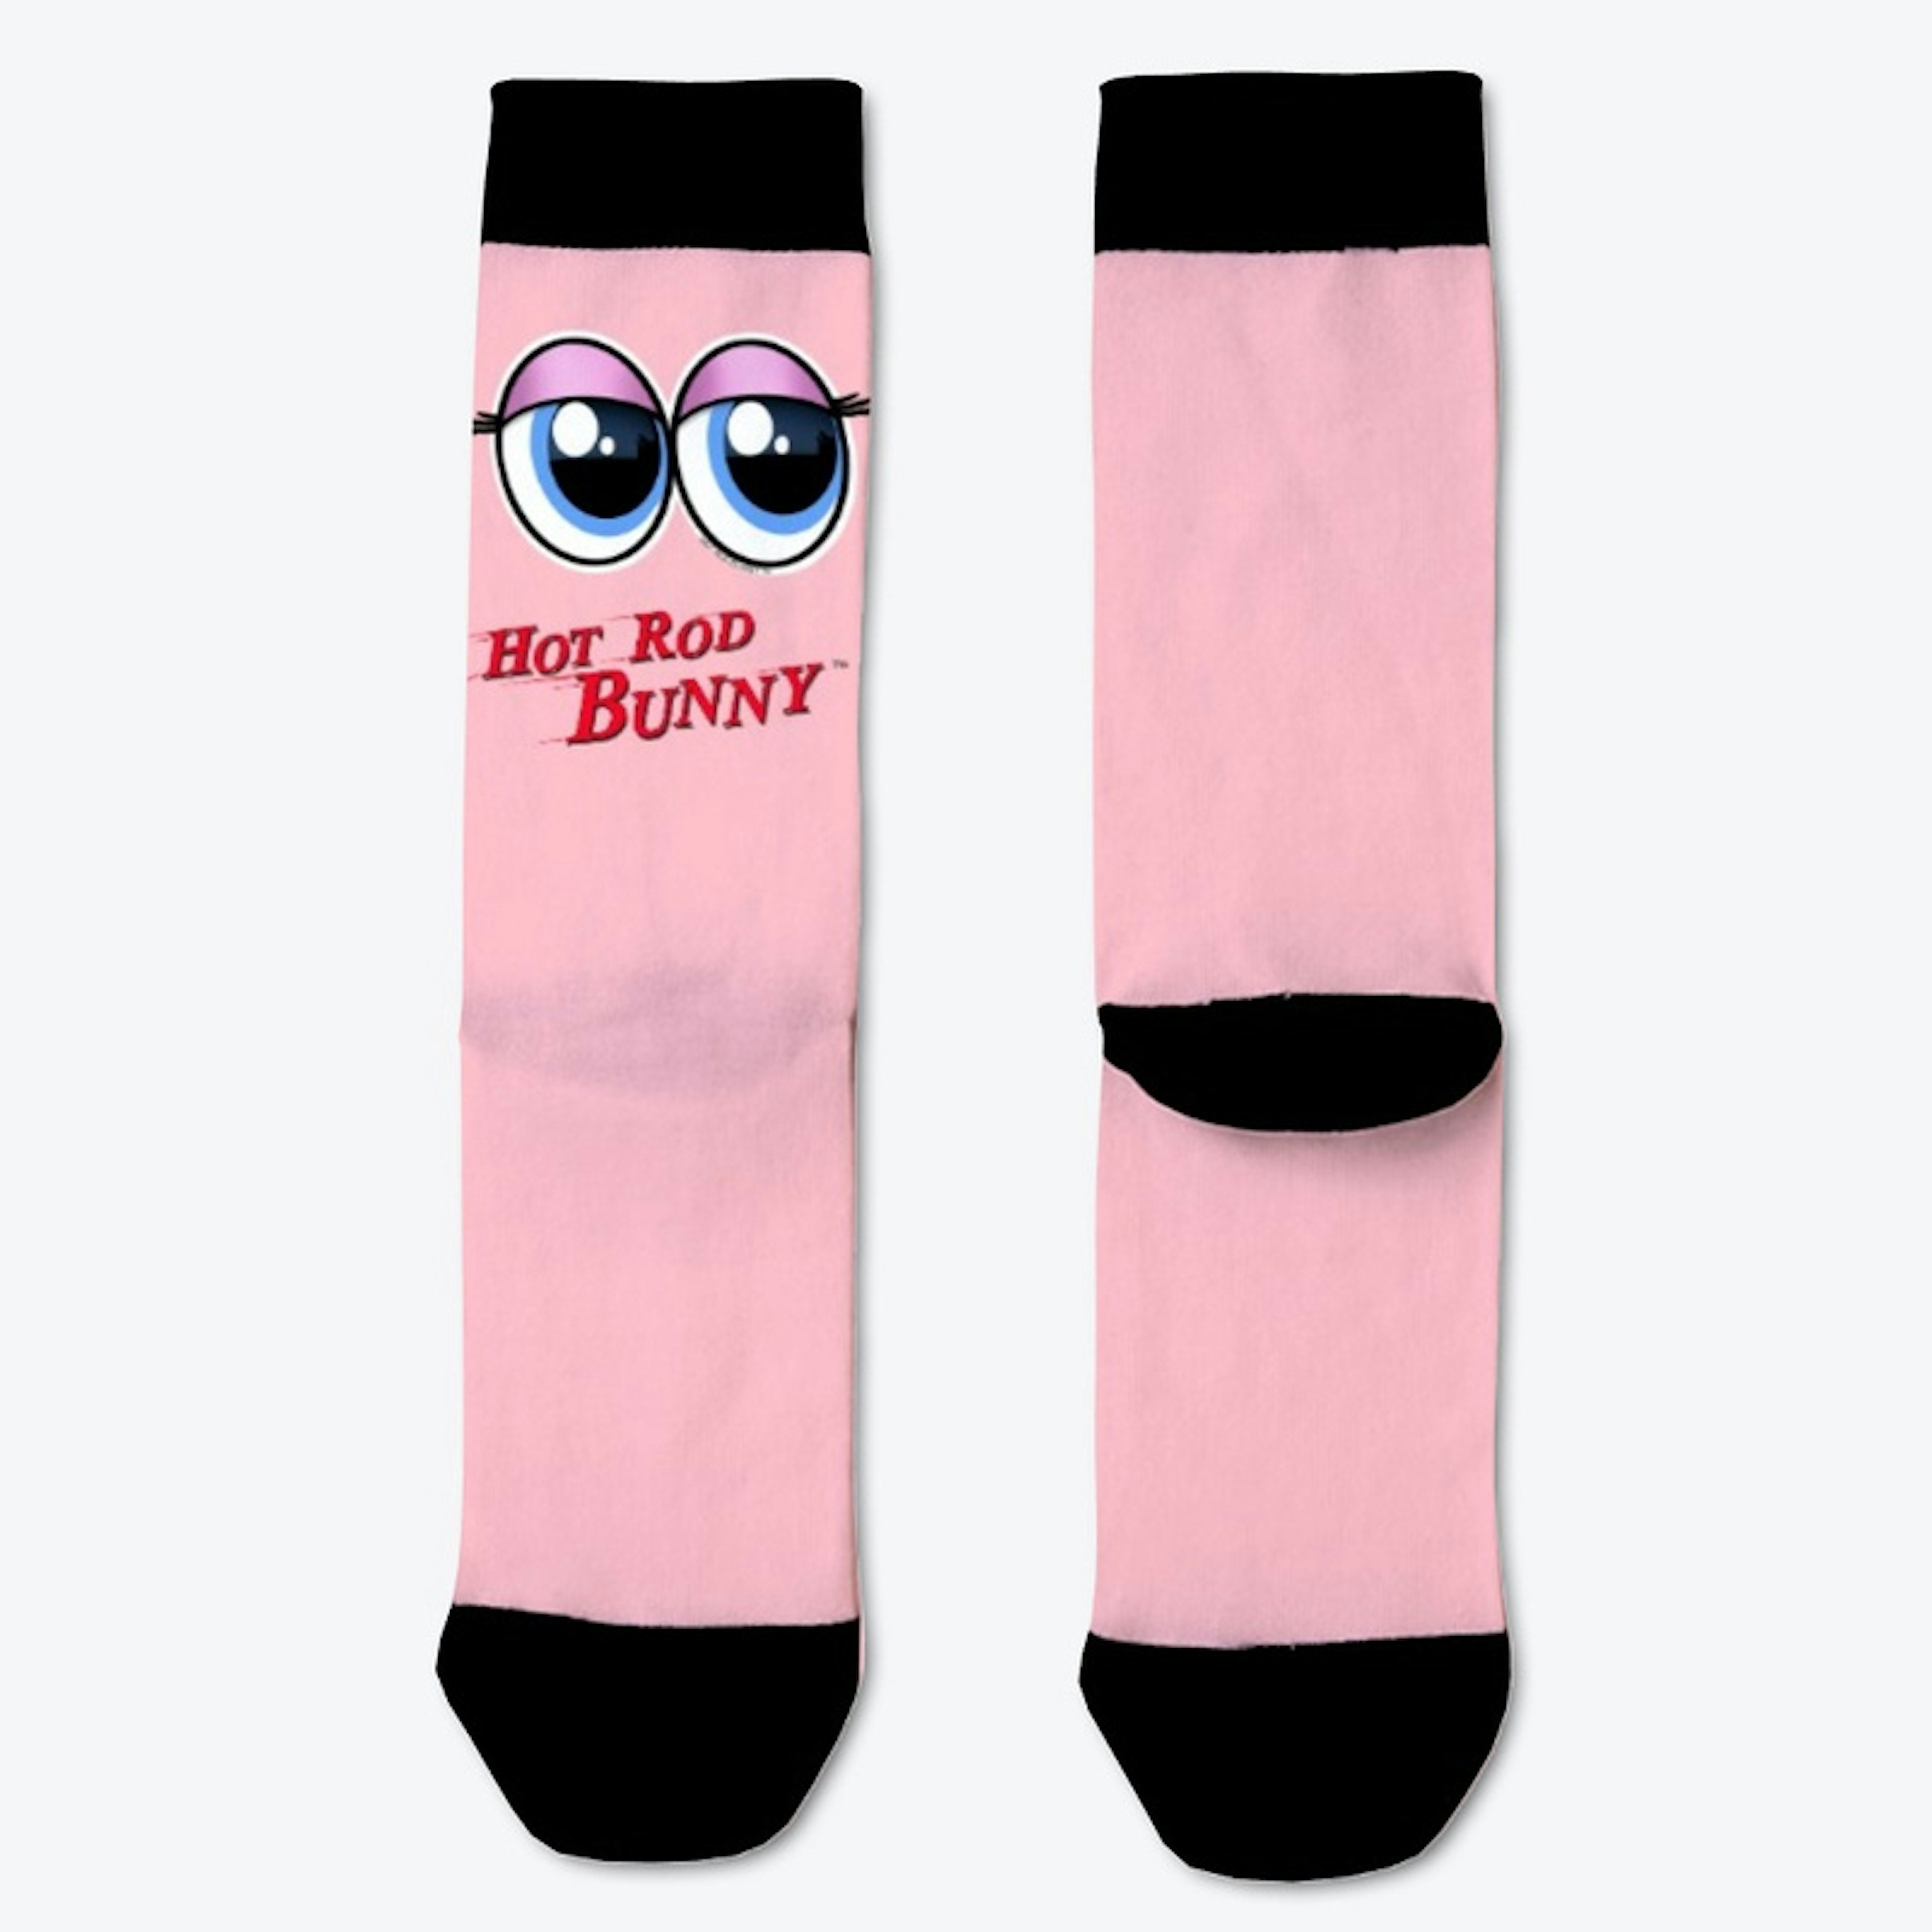 Hot Rod Bunny Beverly's Eyes Socks